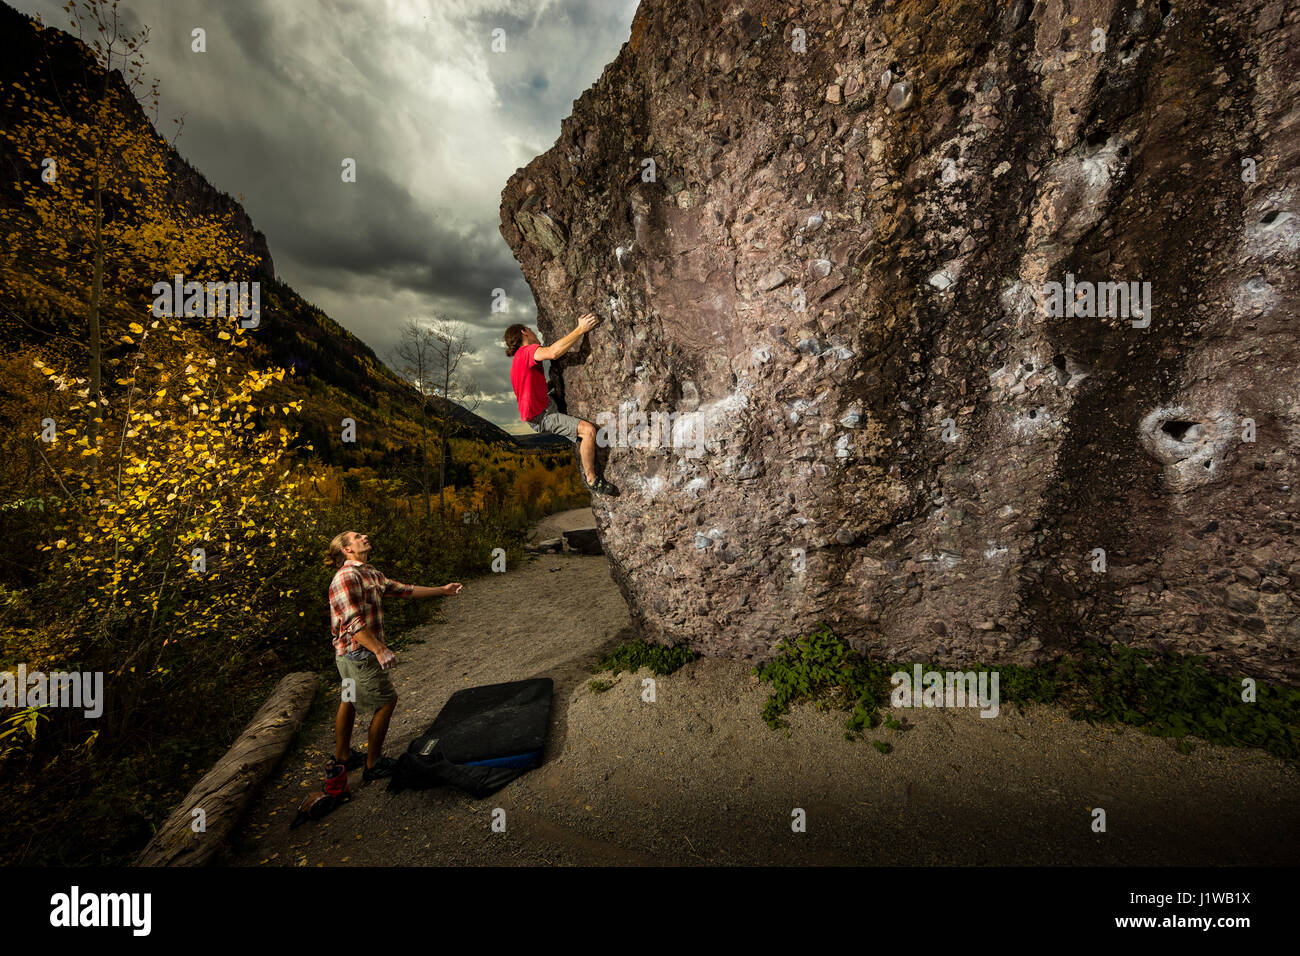 Andrew Merrill spotting Chris Brock bouldering presso la miniera di massi vicino a Telluride, CO. Foto Stock